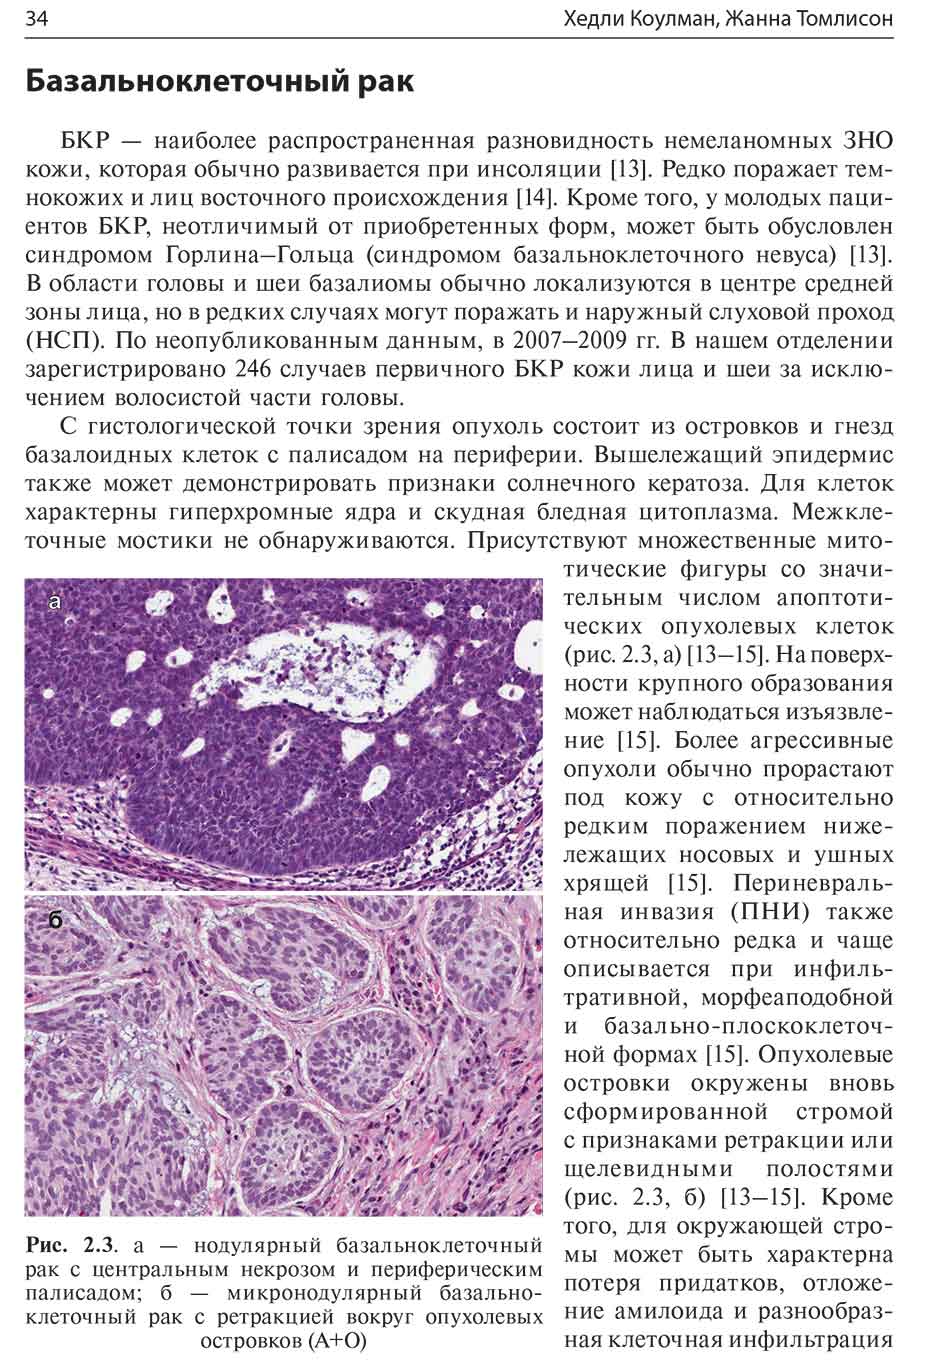 Рис. 2.3. а — нодулярный базальноклеточный рак с центральным некрозом и периферическим палисадом